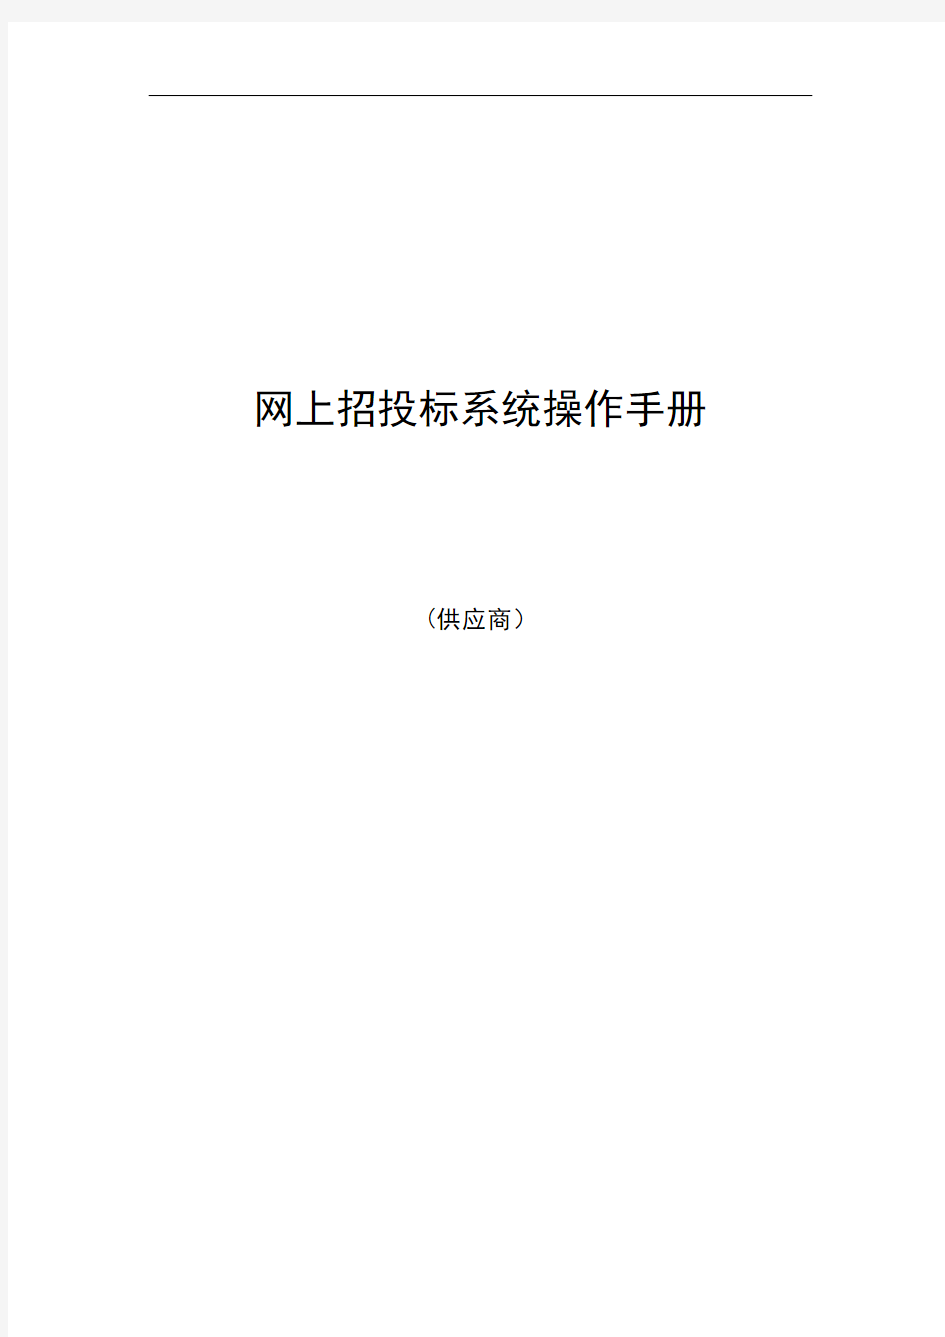 广东省电子政府采购系统·网上招投标操作手册—供应商-广东